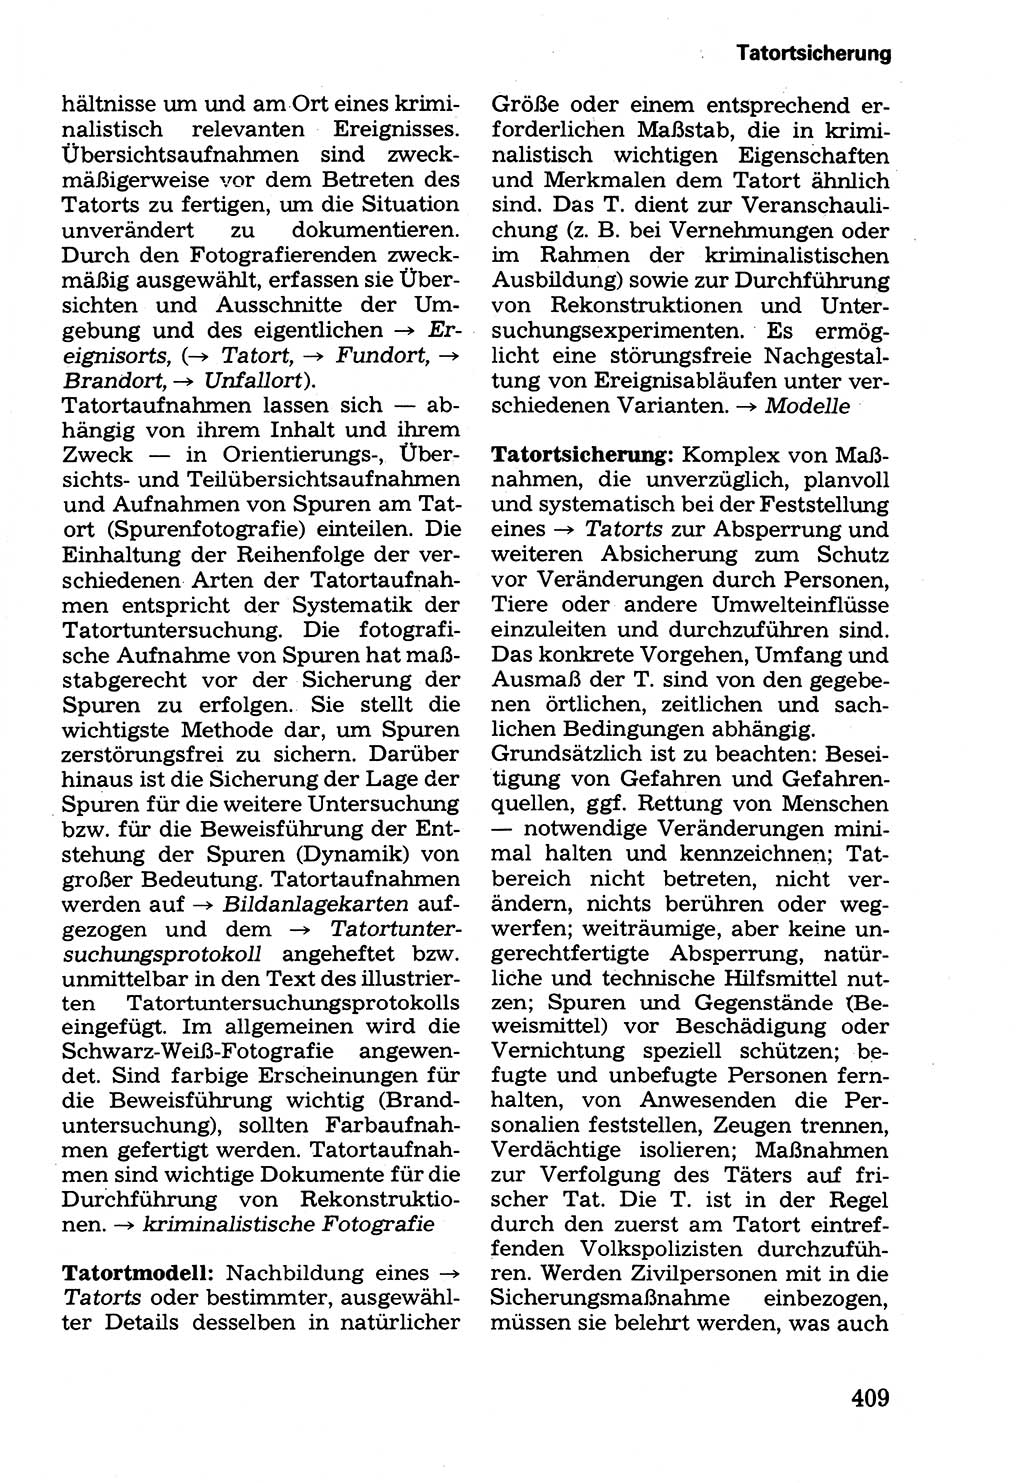 Wörterbuch der sozialistischen Kriminalistik [Deutsche Demokratische Republik (DDR)] 1981, Seite 409 (Wb. soz. Krim. DDR 1981, S. 409)